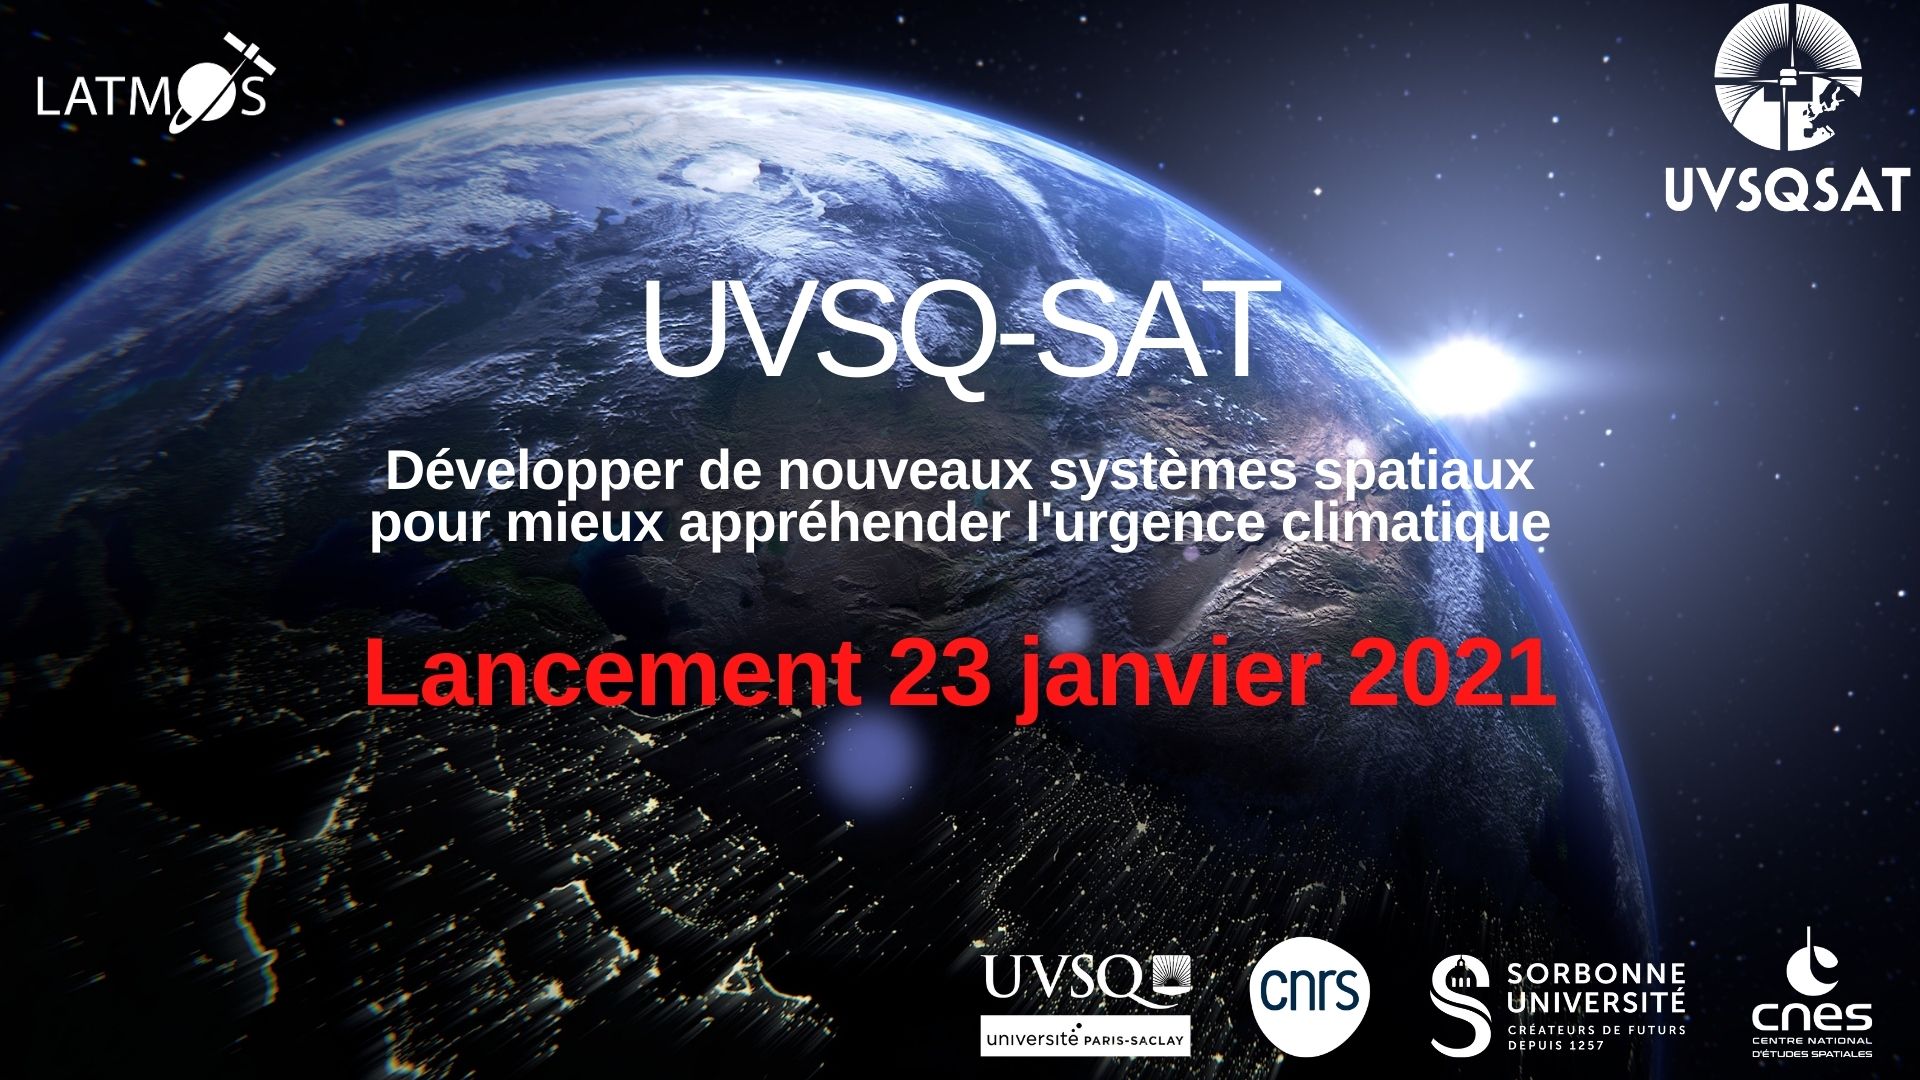 L’UVSQ-SAT rejoindra l’espace le 23 janvier à 15h24 